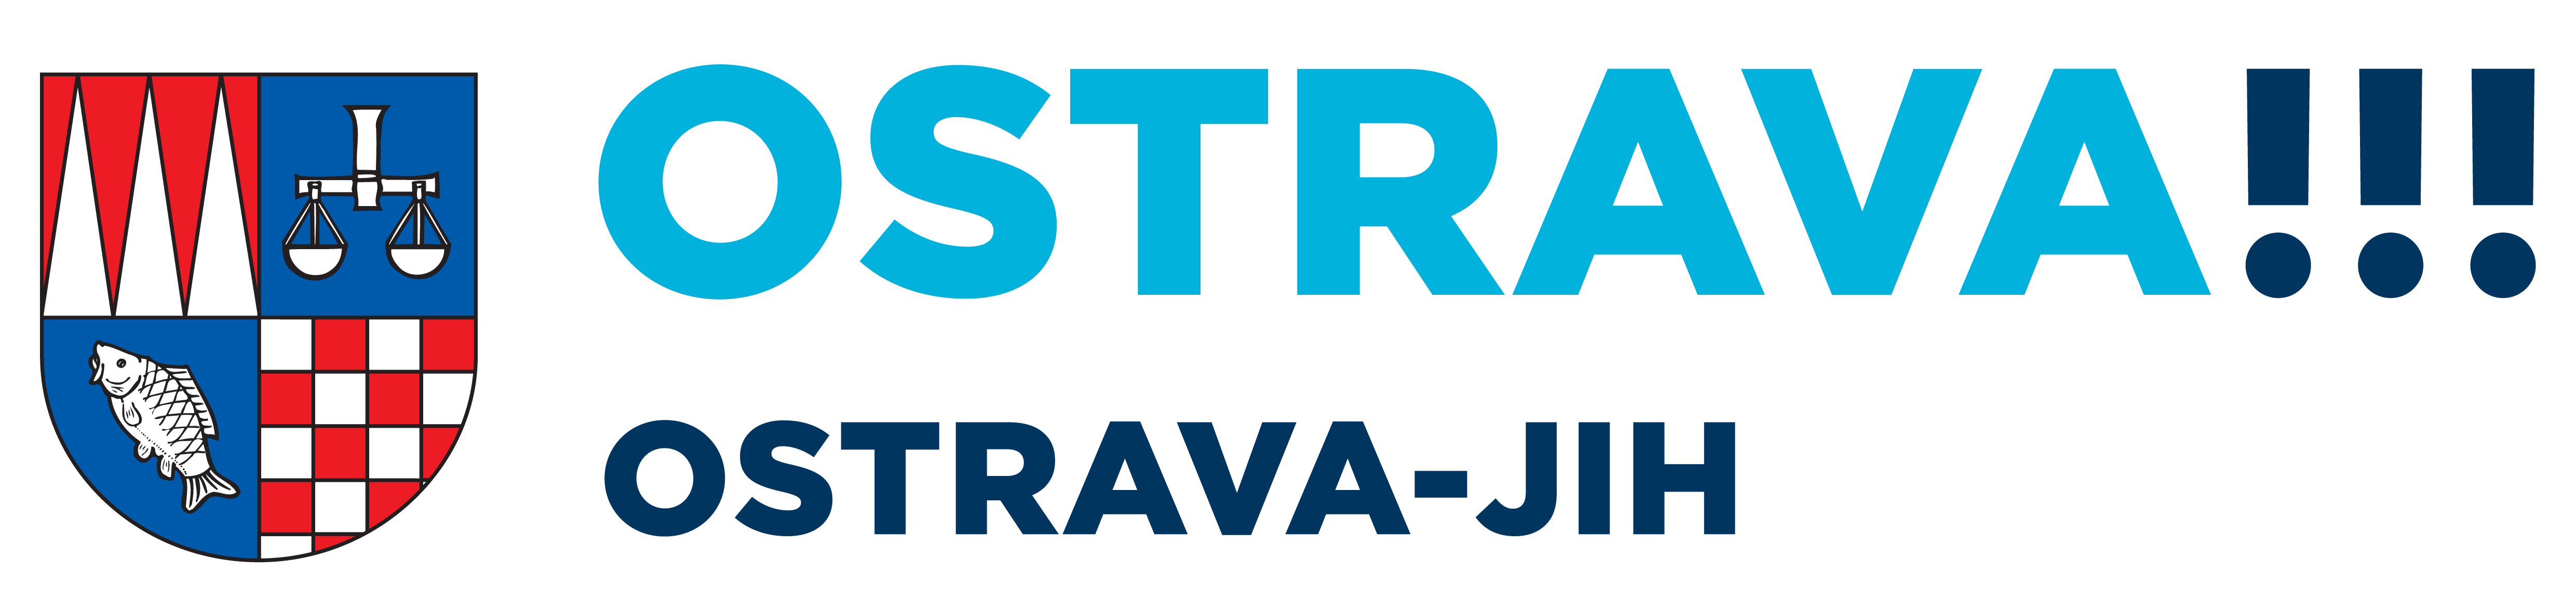 Městský obvod Ostrava – Jih